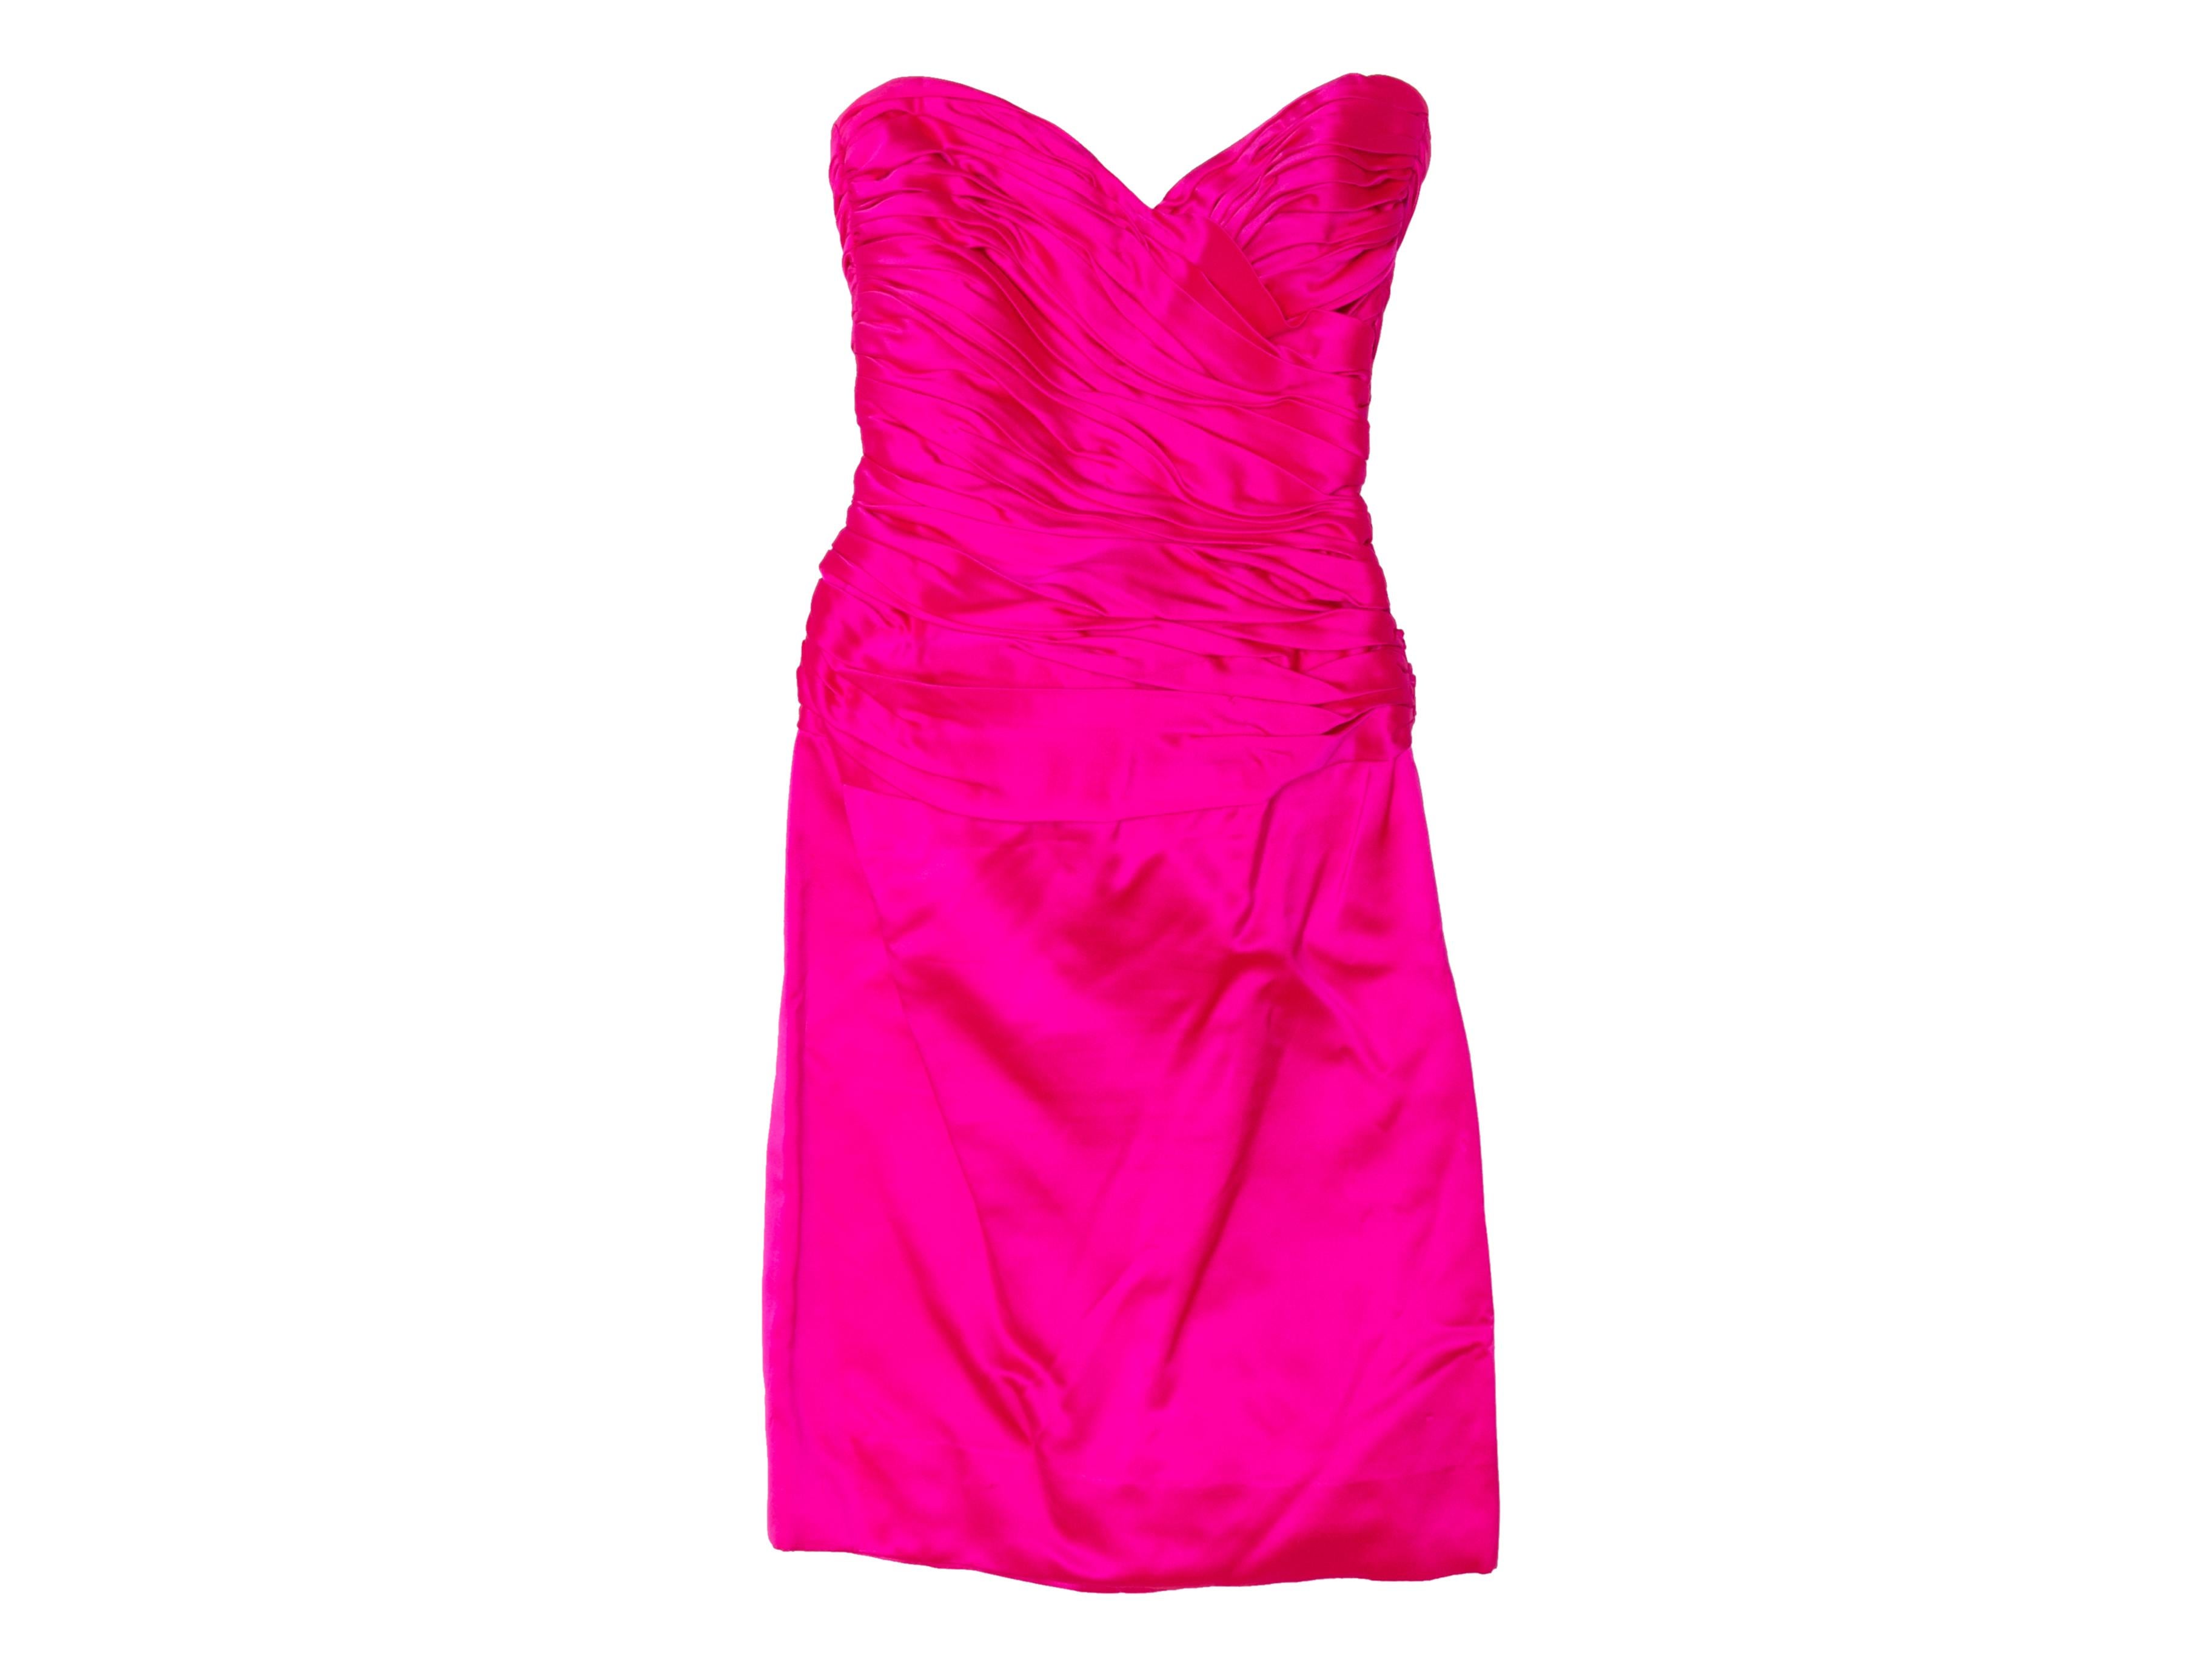 Vintage Hot Pink Vicky Tiel Strapless Silk Dress Size US 8